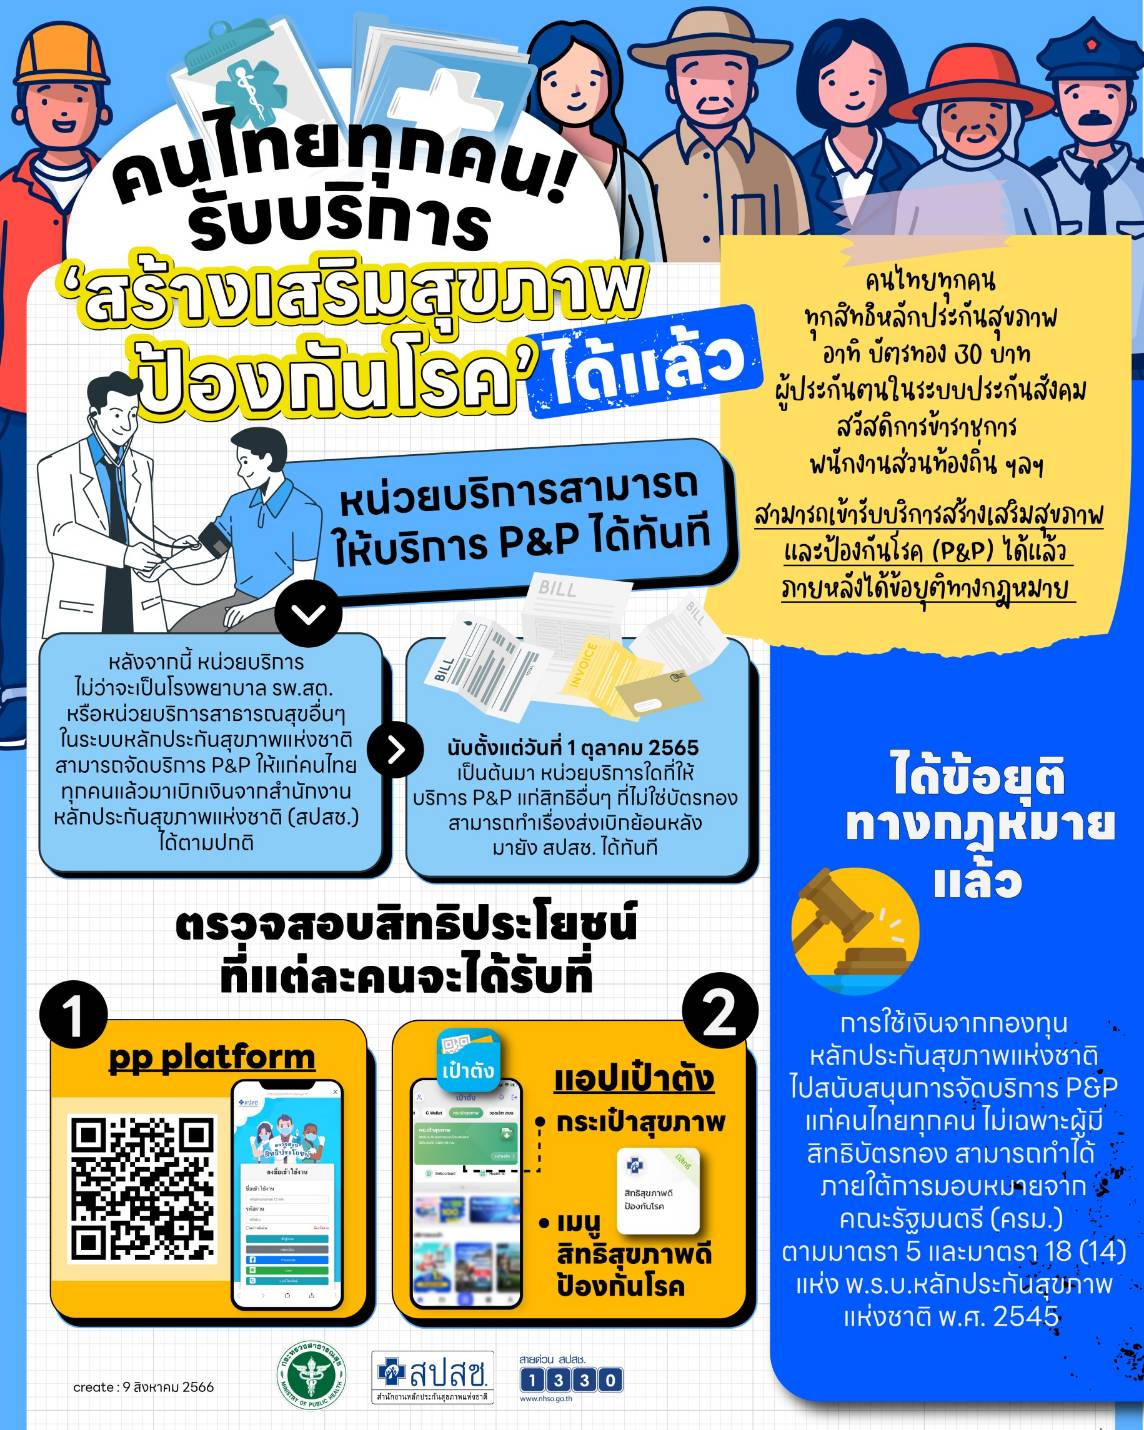 คนไทยทุกคนรับบริการสร้างเสริมสุขภาพป้องกันโรคได้แล้ว 